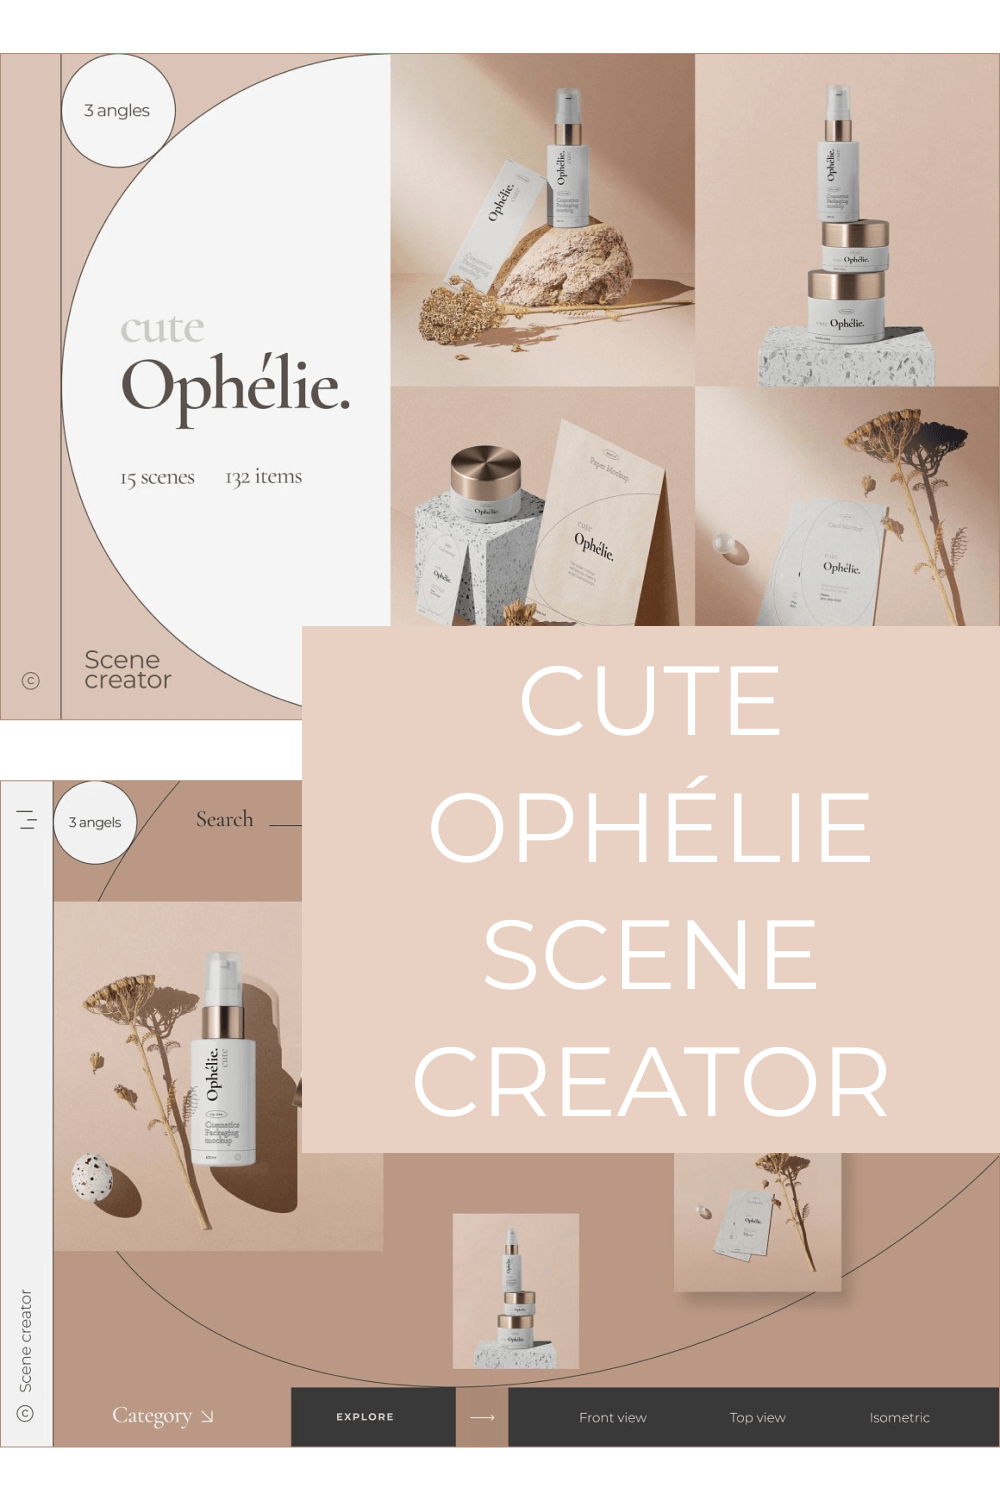 Category of Cute Ophélie – Scene Creator.